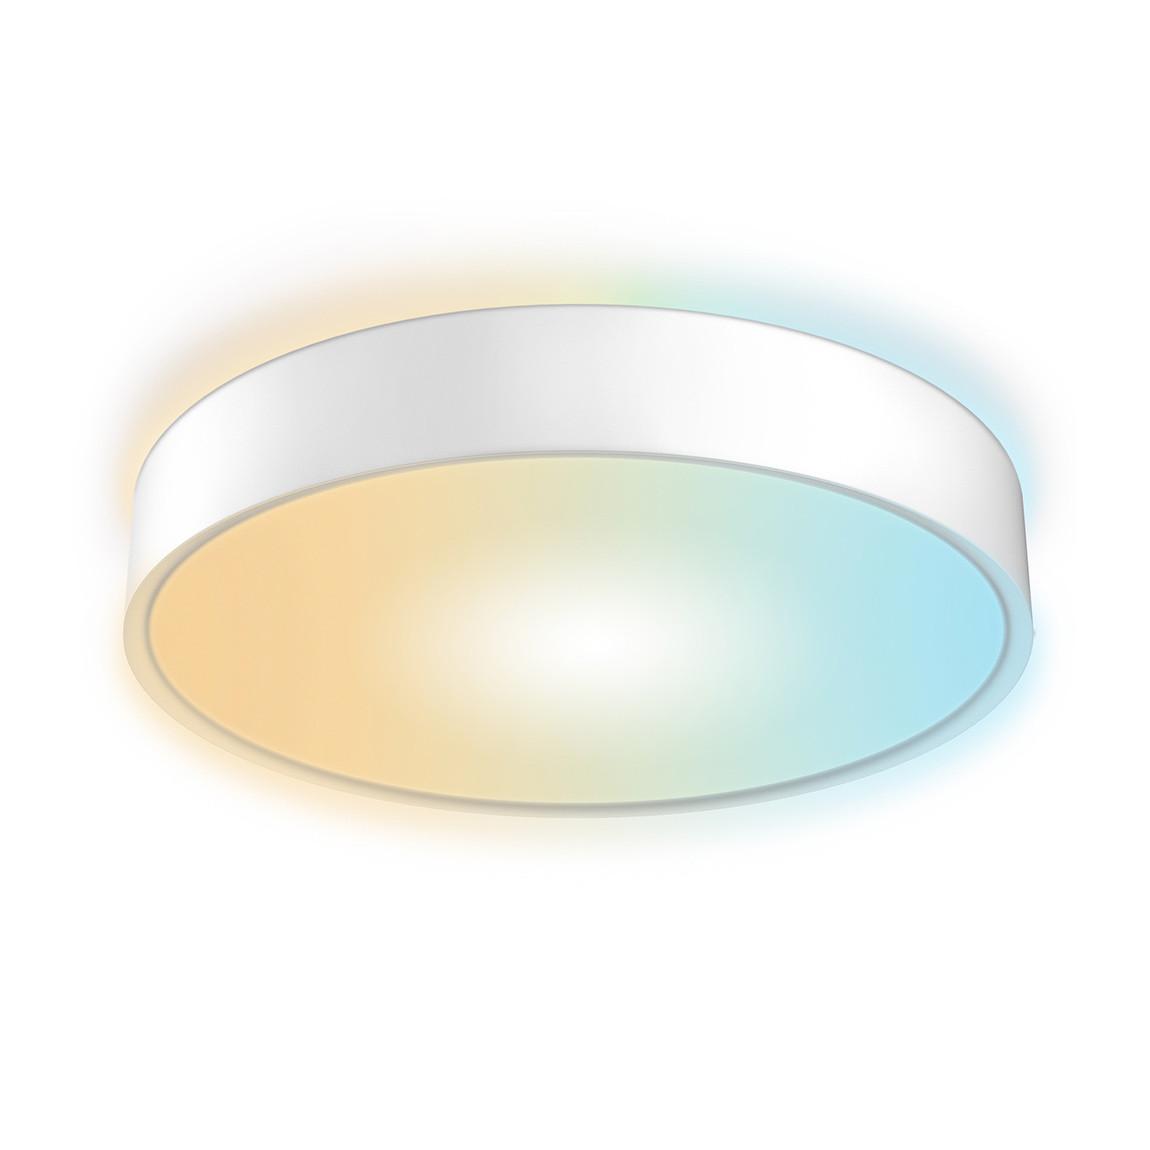 InInnr Smart Round Ceiling Lampe Comfort – LED-Deckenleuchte - Weiß